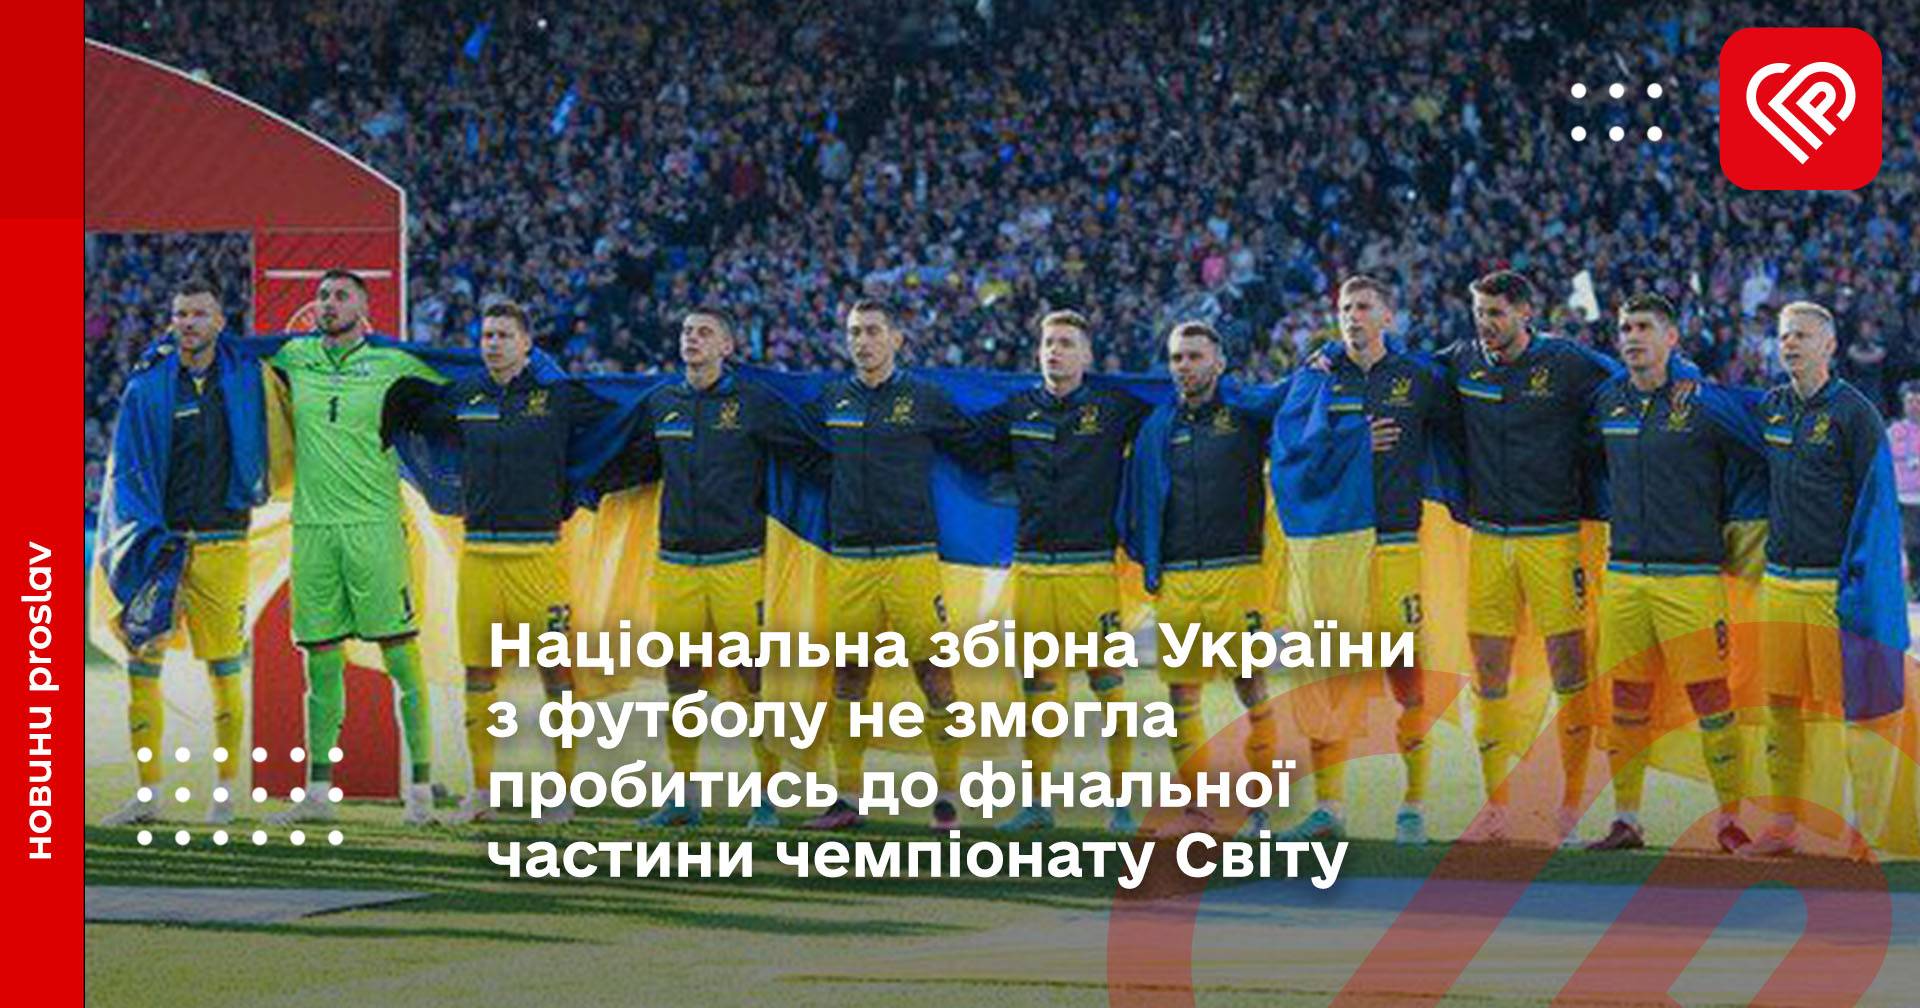 Національна збірна України з футболу не змогла пробитись до фінальної частини чемпіонату Світу